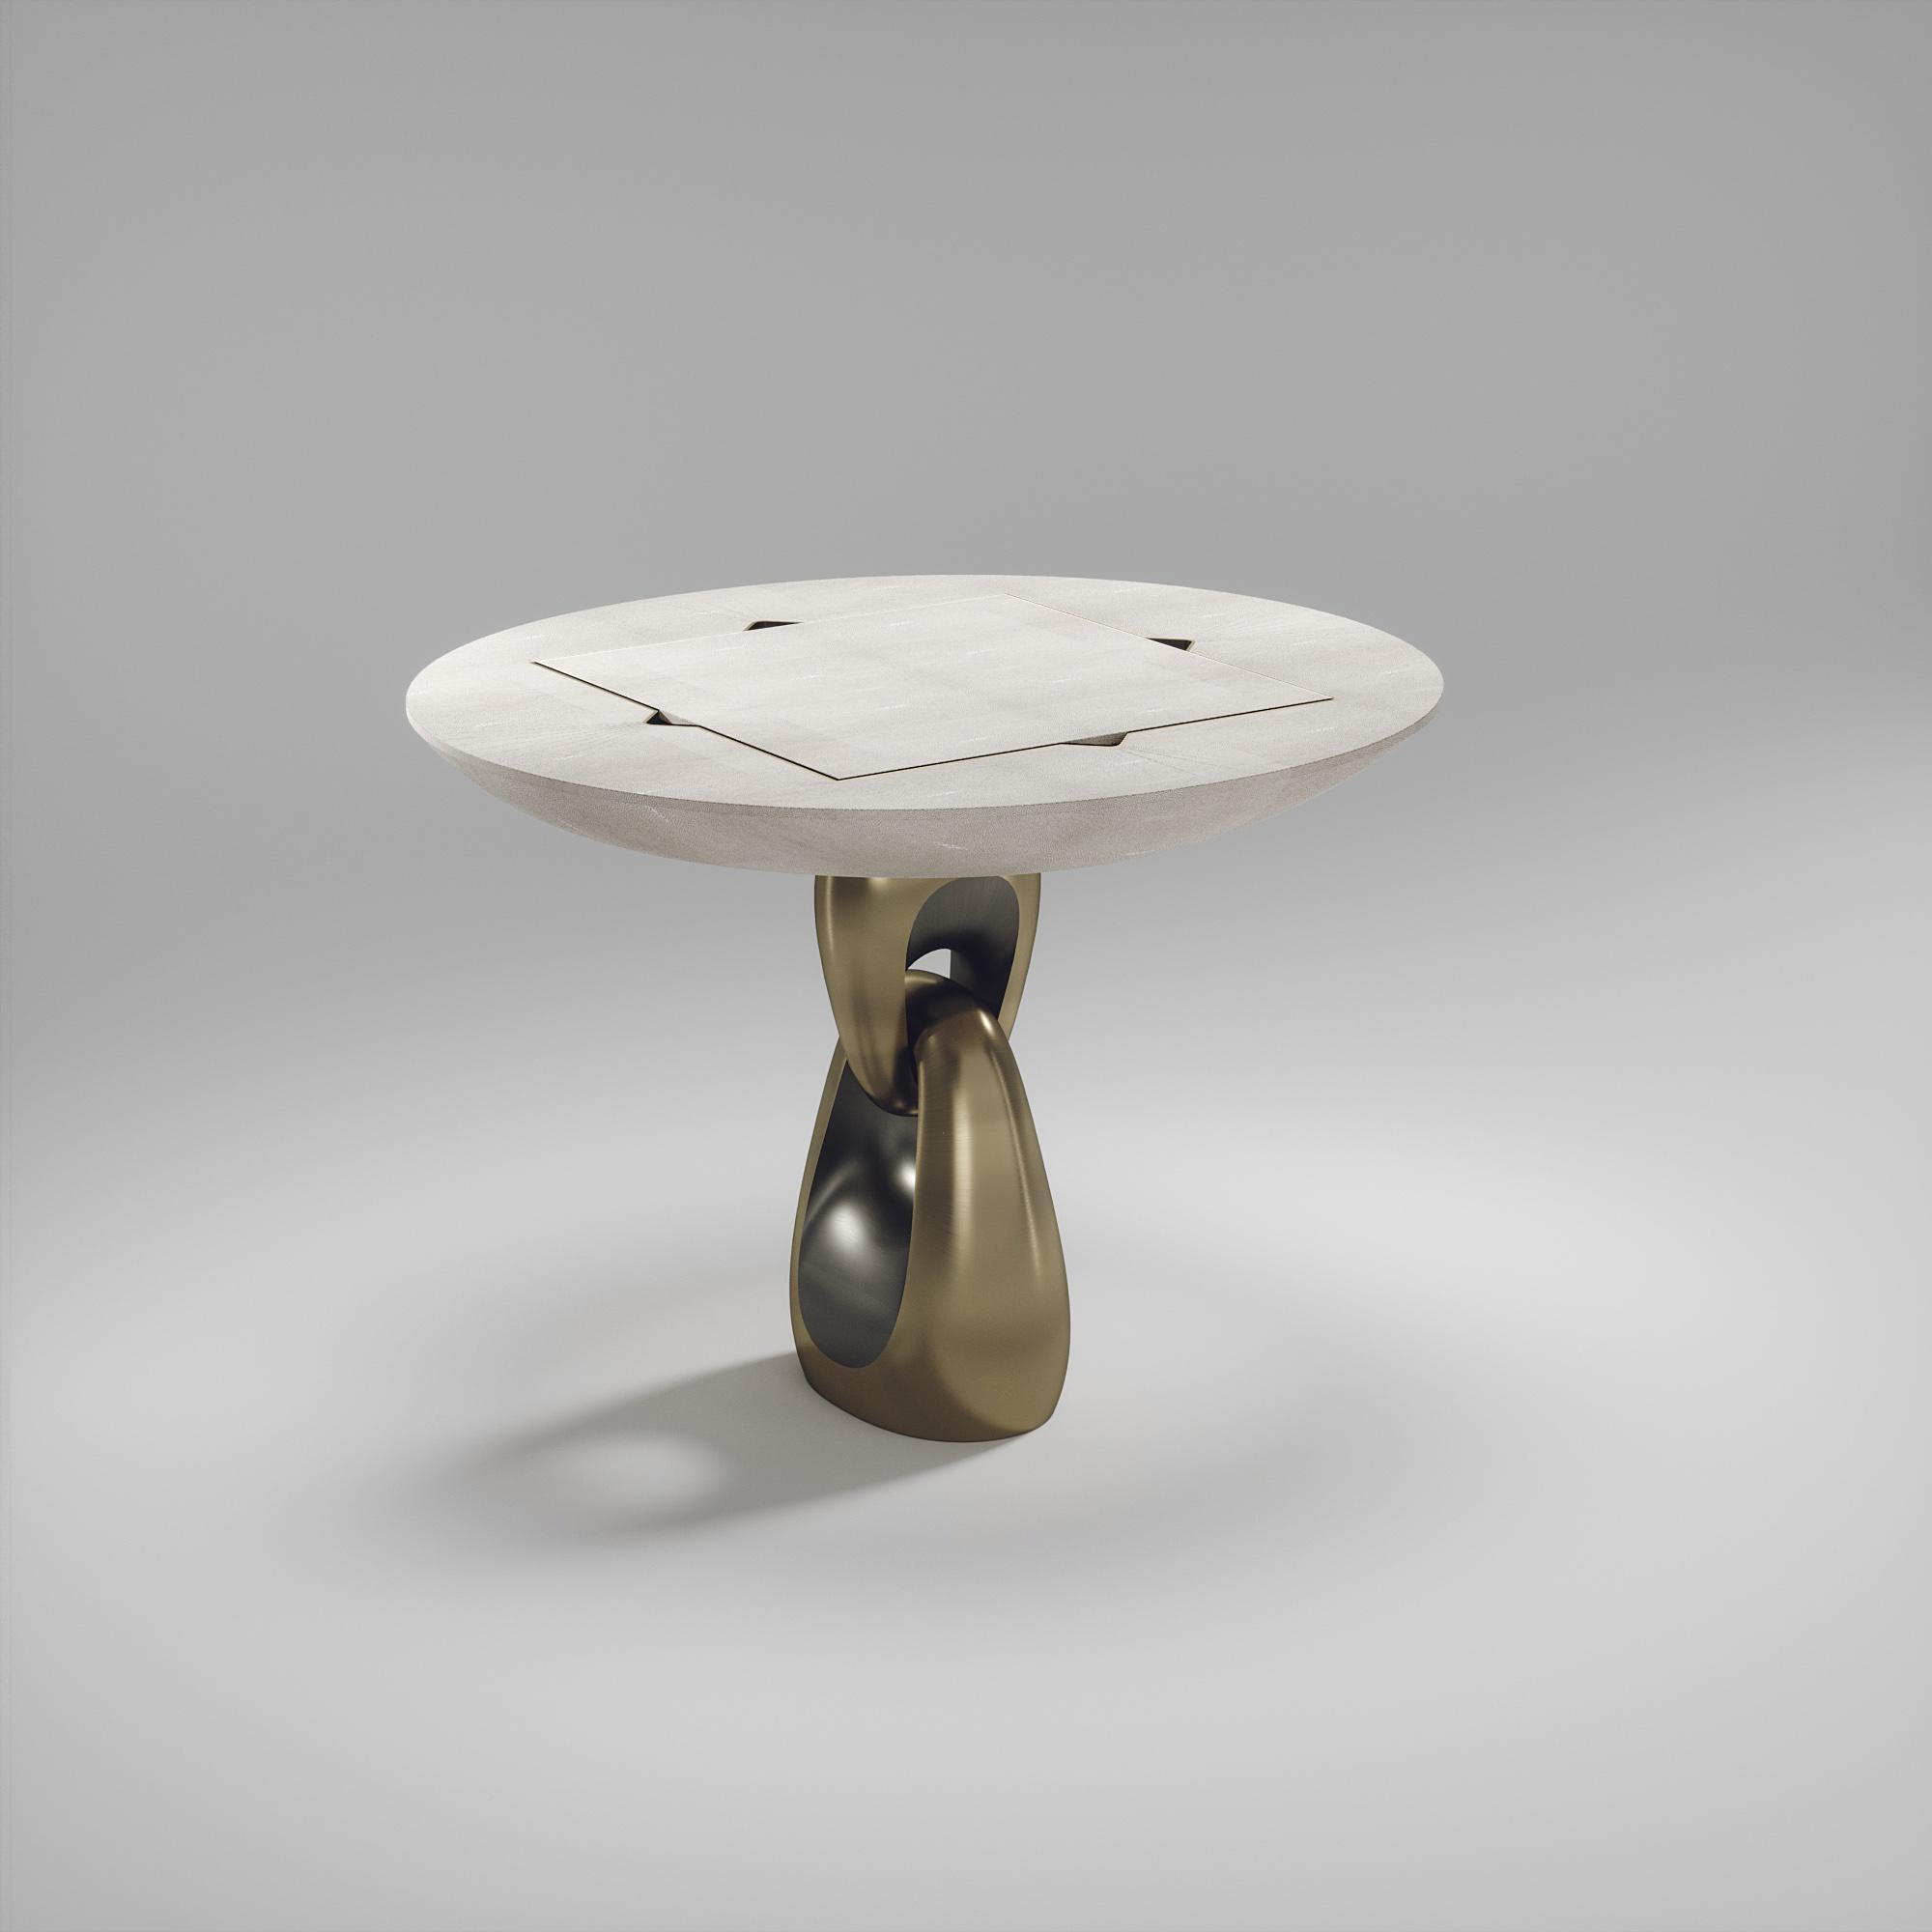 La table de jeu 4 en 1 Saturn de R&Y Augousti est une pièce luxueuse pour votre maison. Les lignes épurées de l'ensemble de la pièce en galuchat crème, accentuées par la base sculpturale et élégante en laiton bronze-patine, la rendent polyvalente